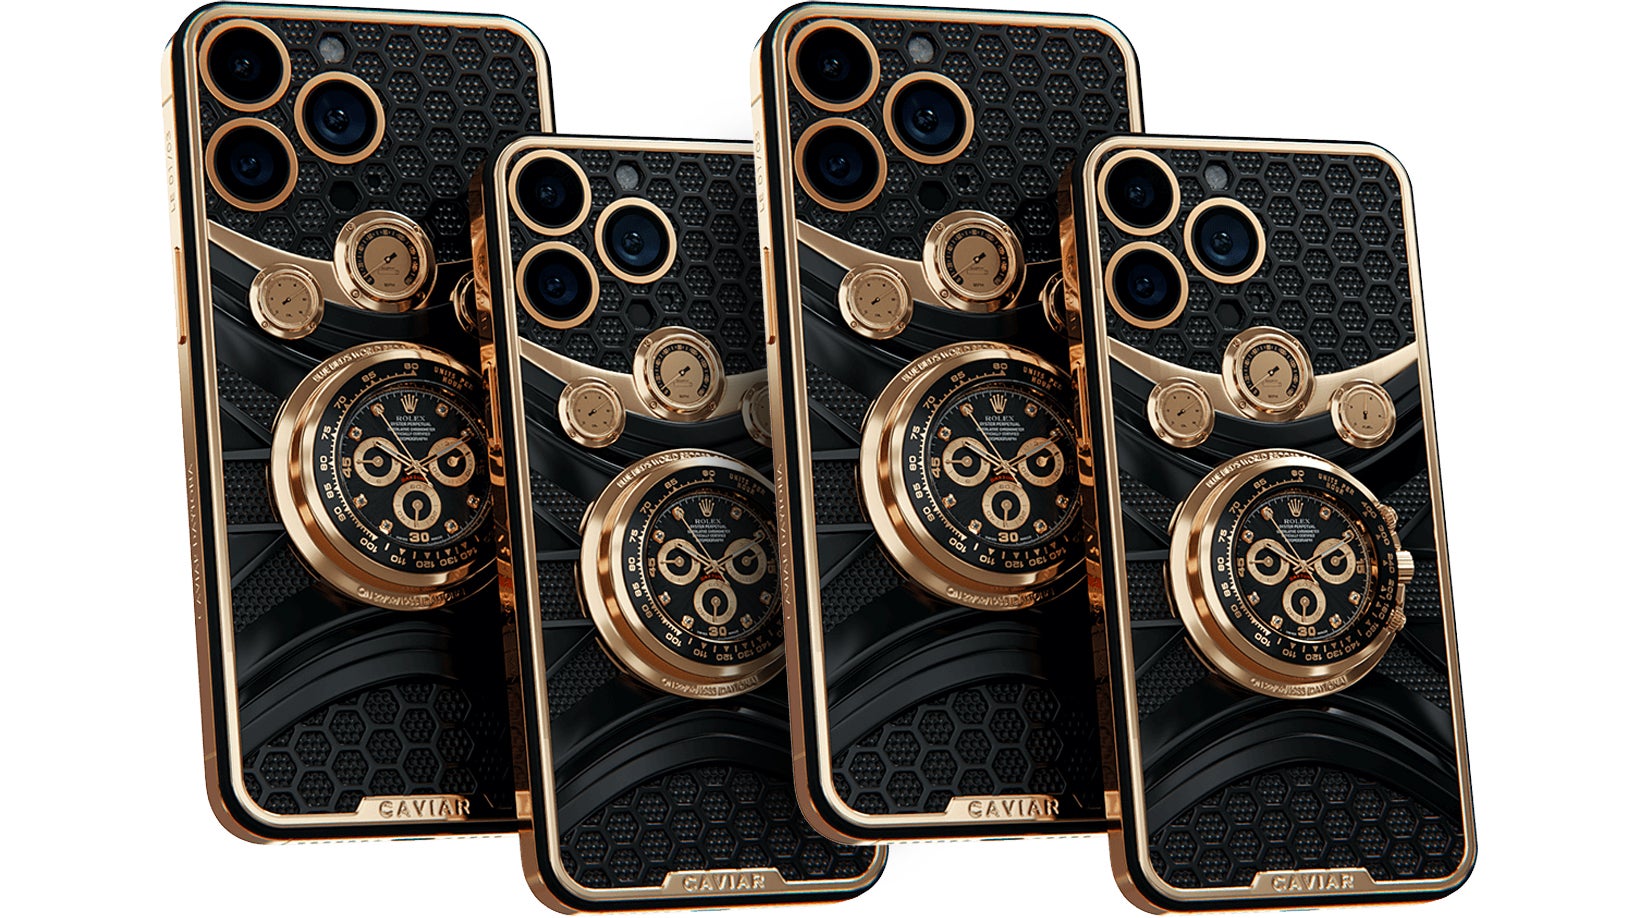 أربع نسخ من علبة الهاتف الذكي Caviar Daytona تتميز بساعة رولكس مدمجة في الخلف.